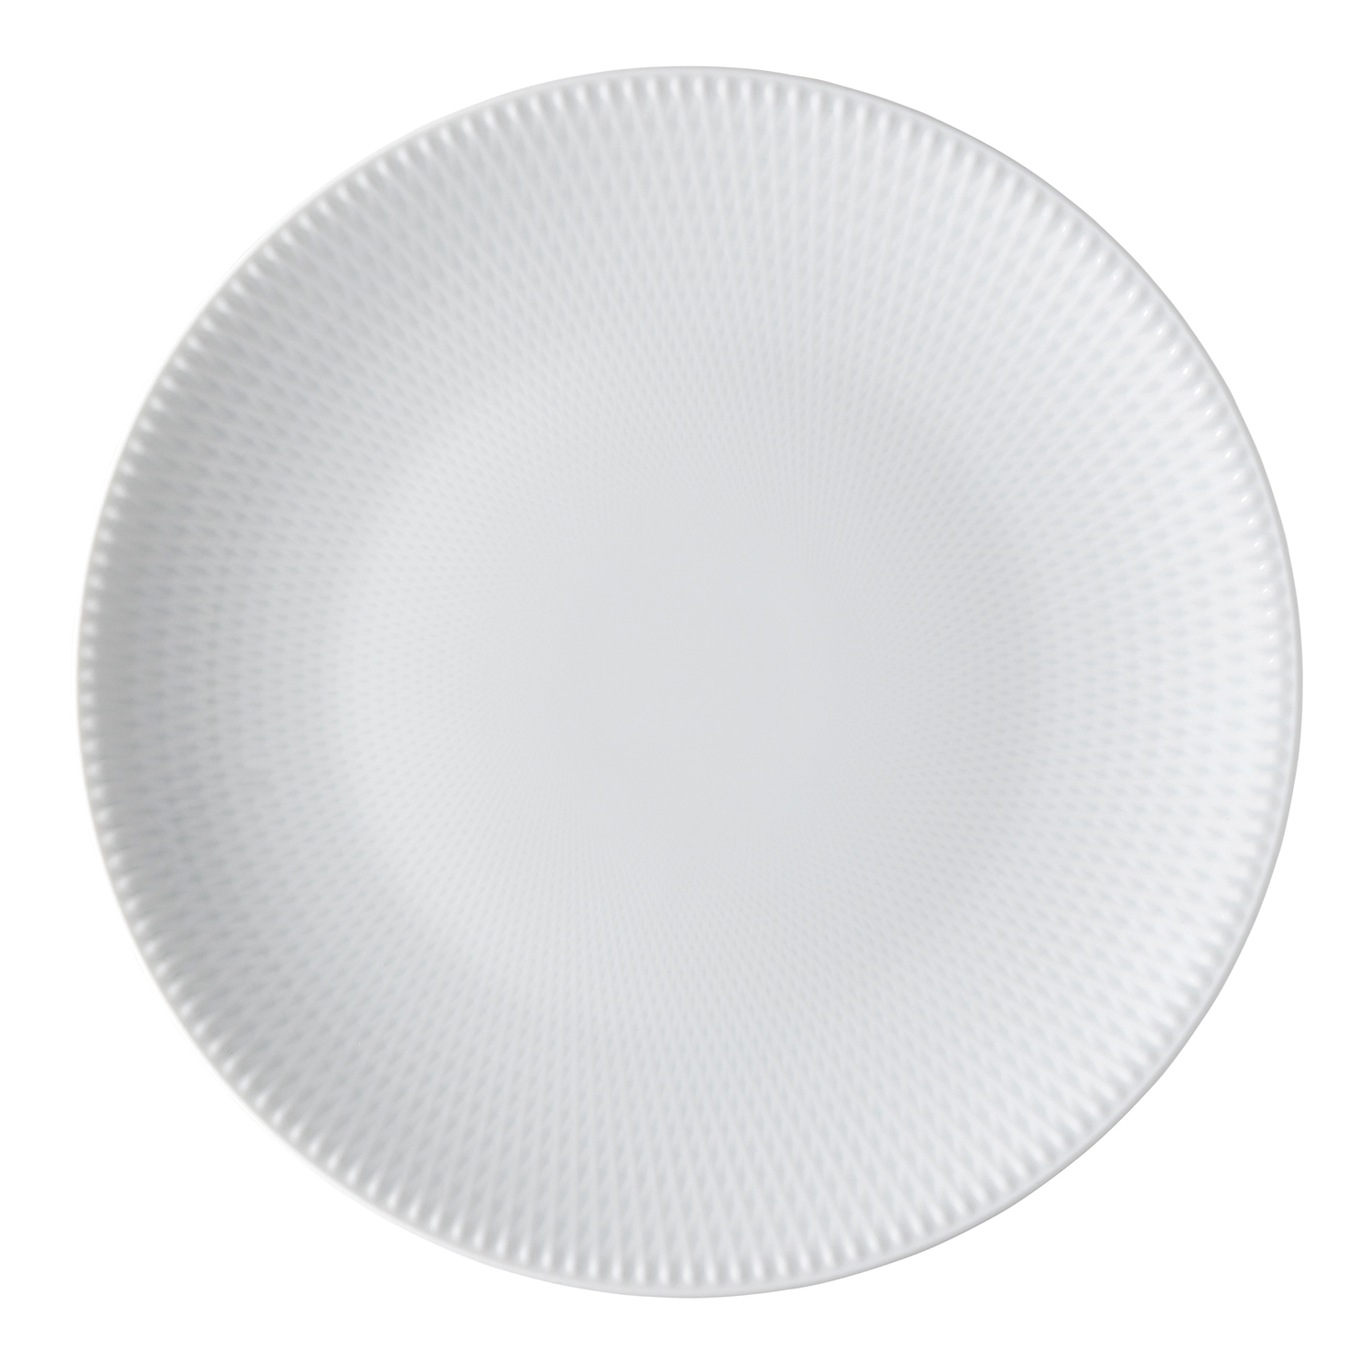 Blend Plate Crossbred, 25 cm